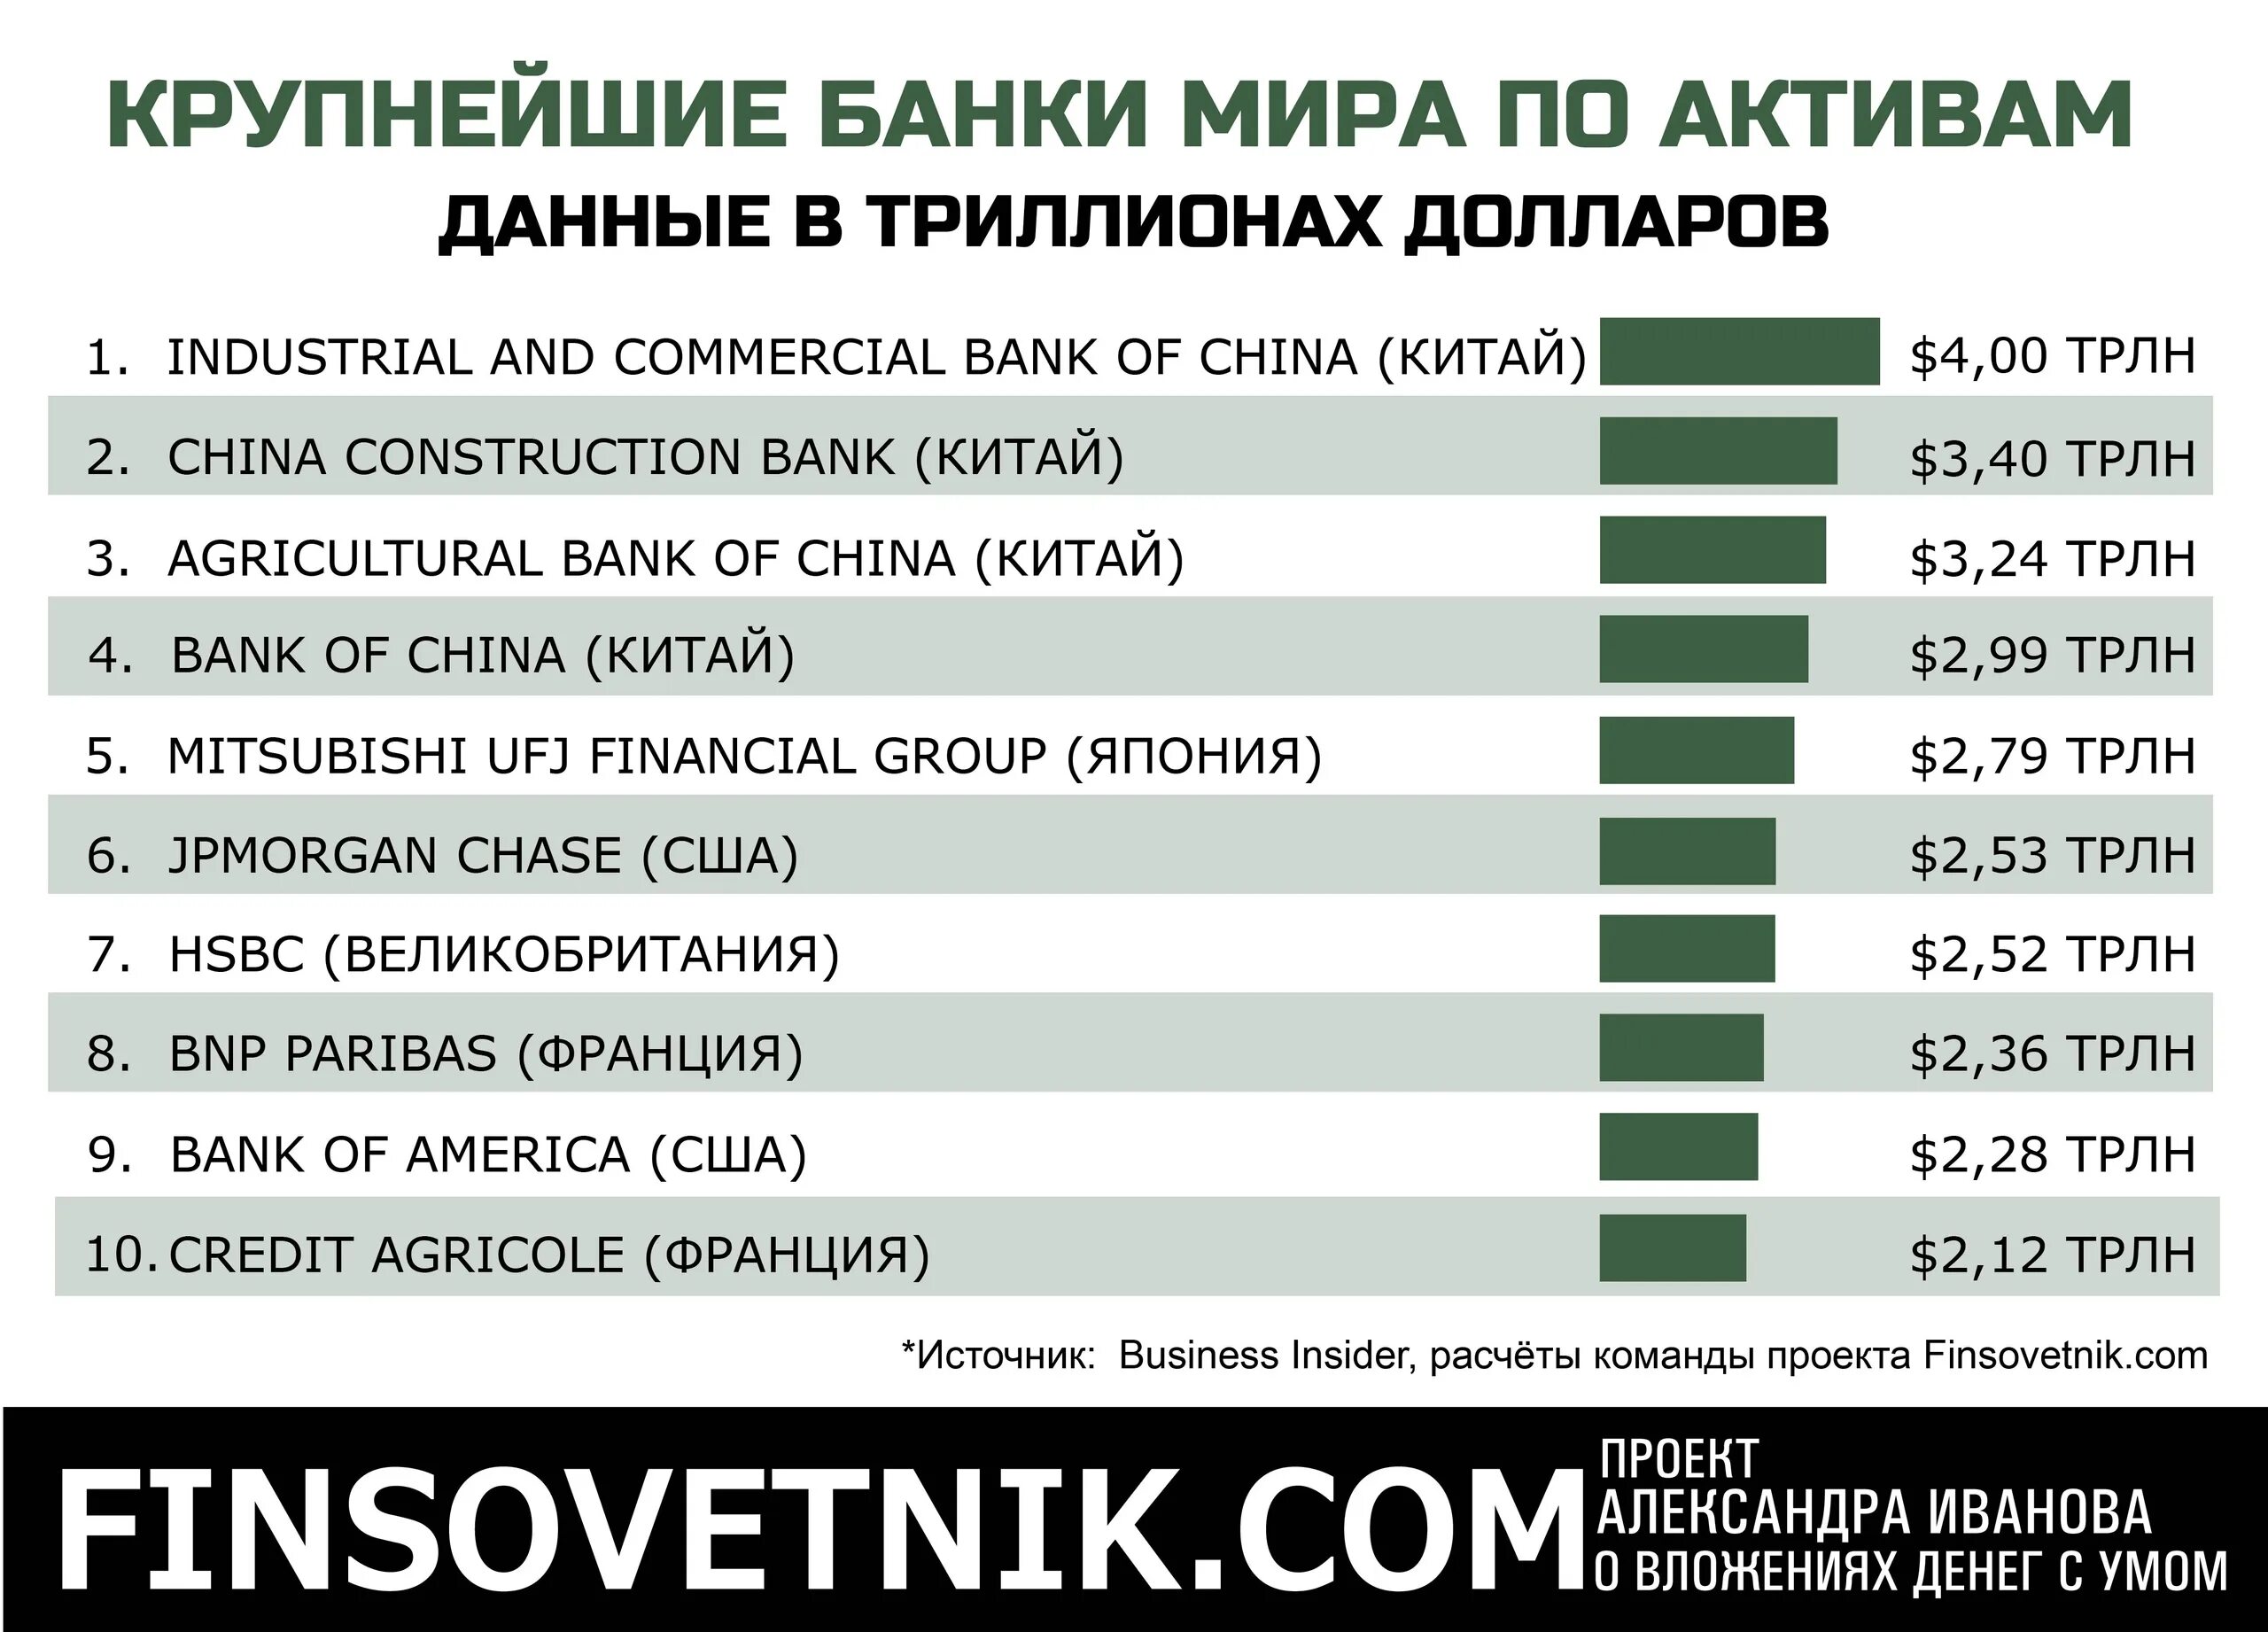 Самые крупные банки. Топ 10 крупнейших банков. Топ банки по активам